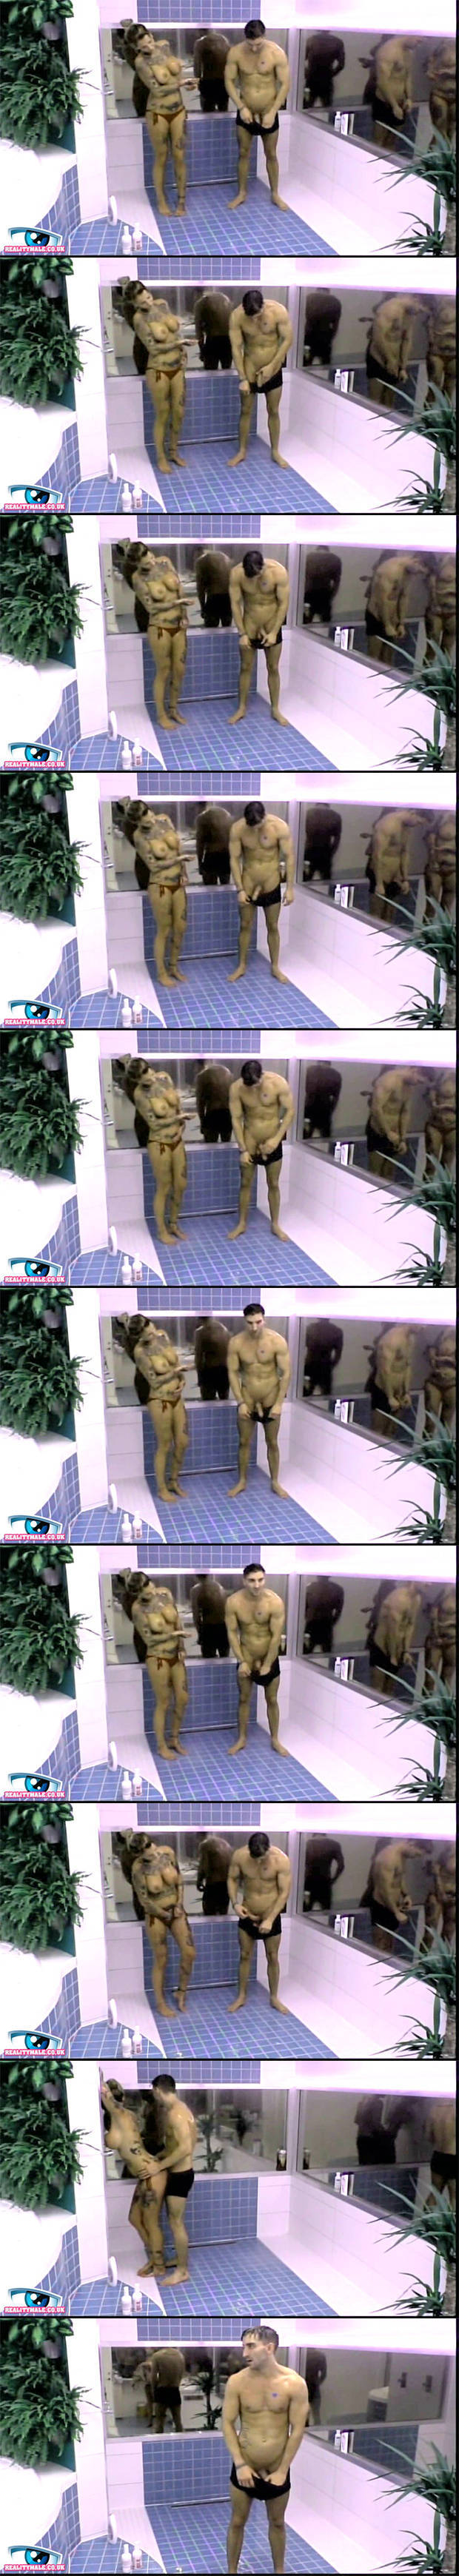 tv nudity bb sweden thorbjorn naked cock flash shower